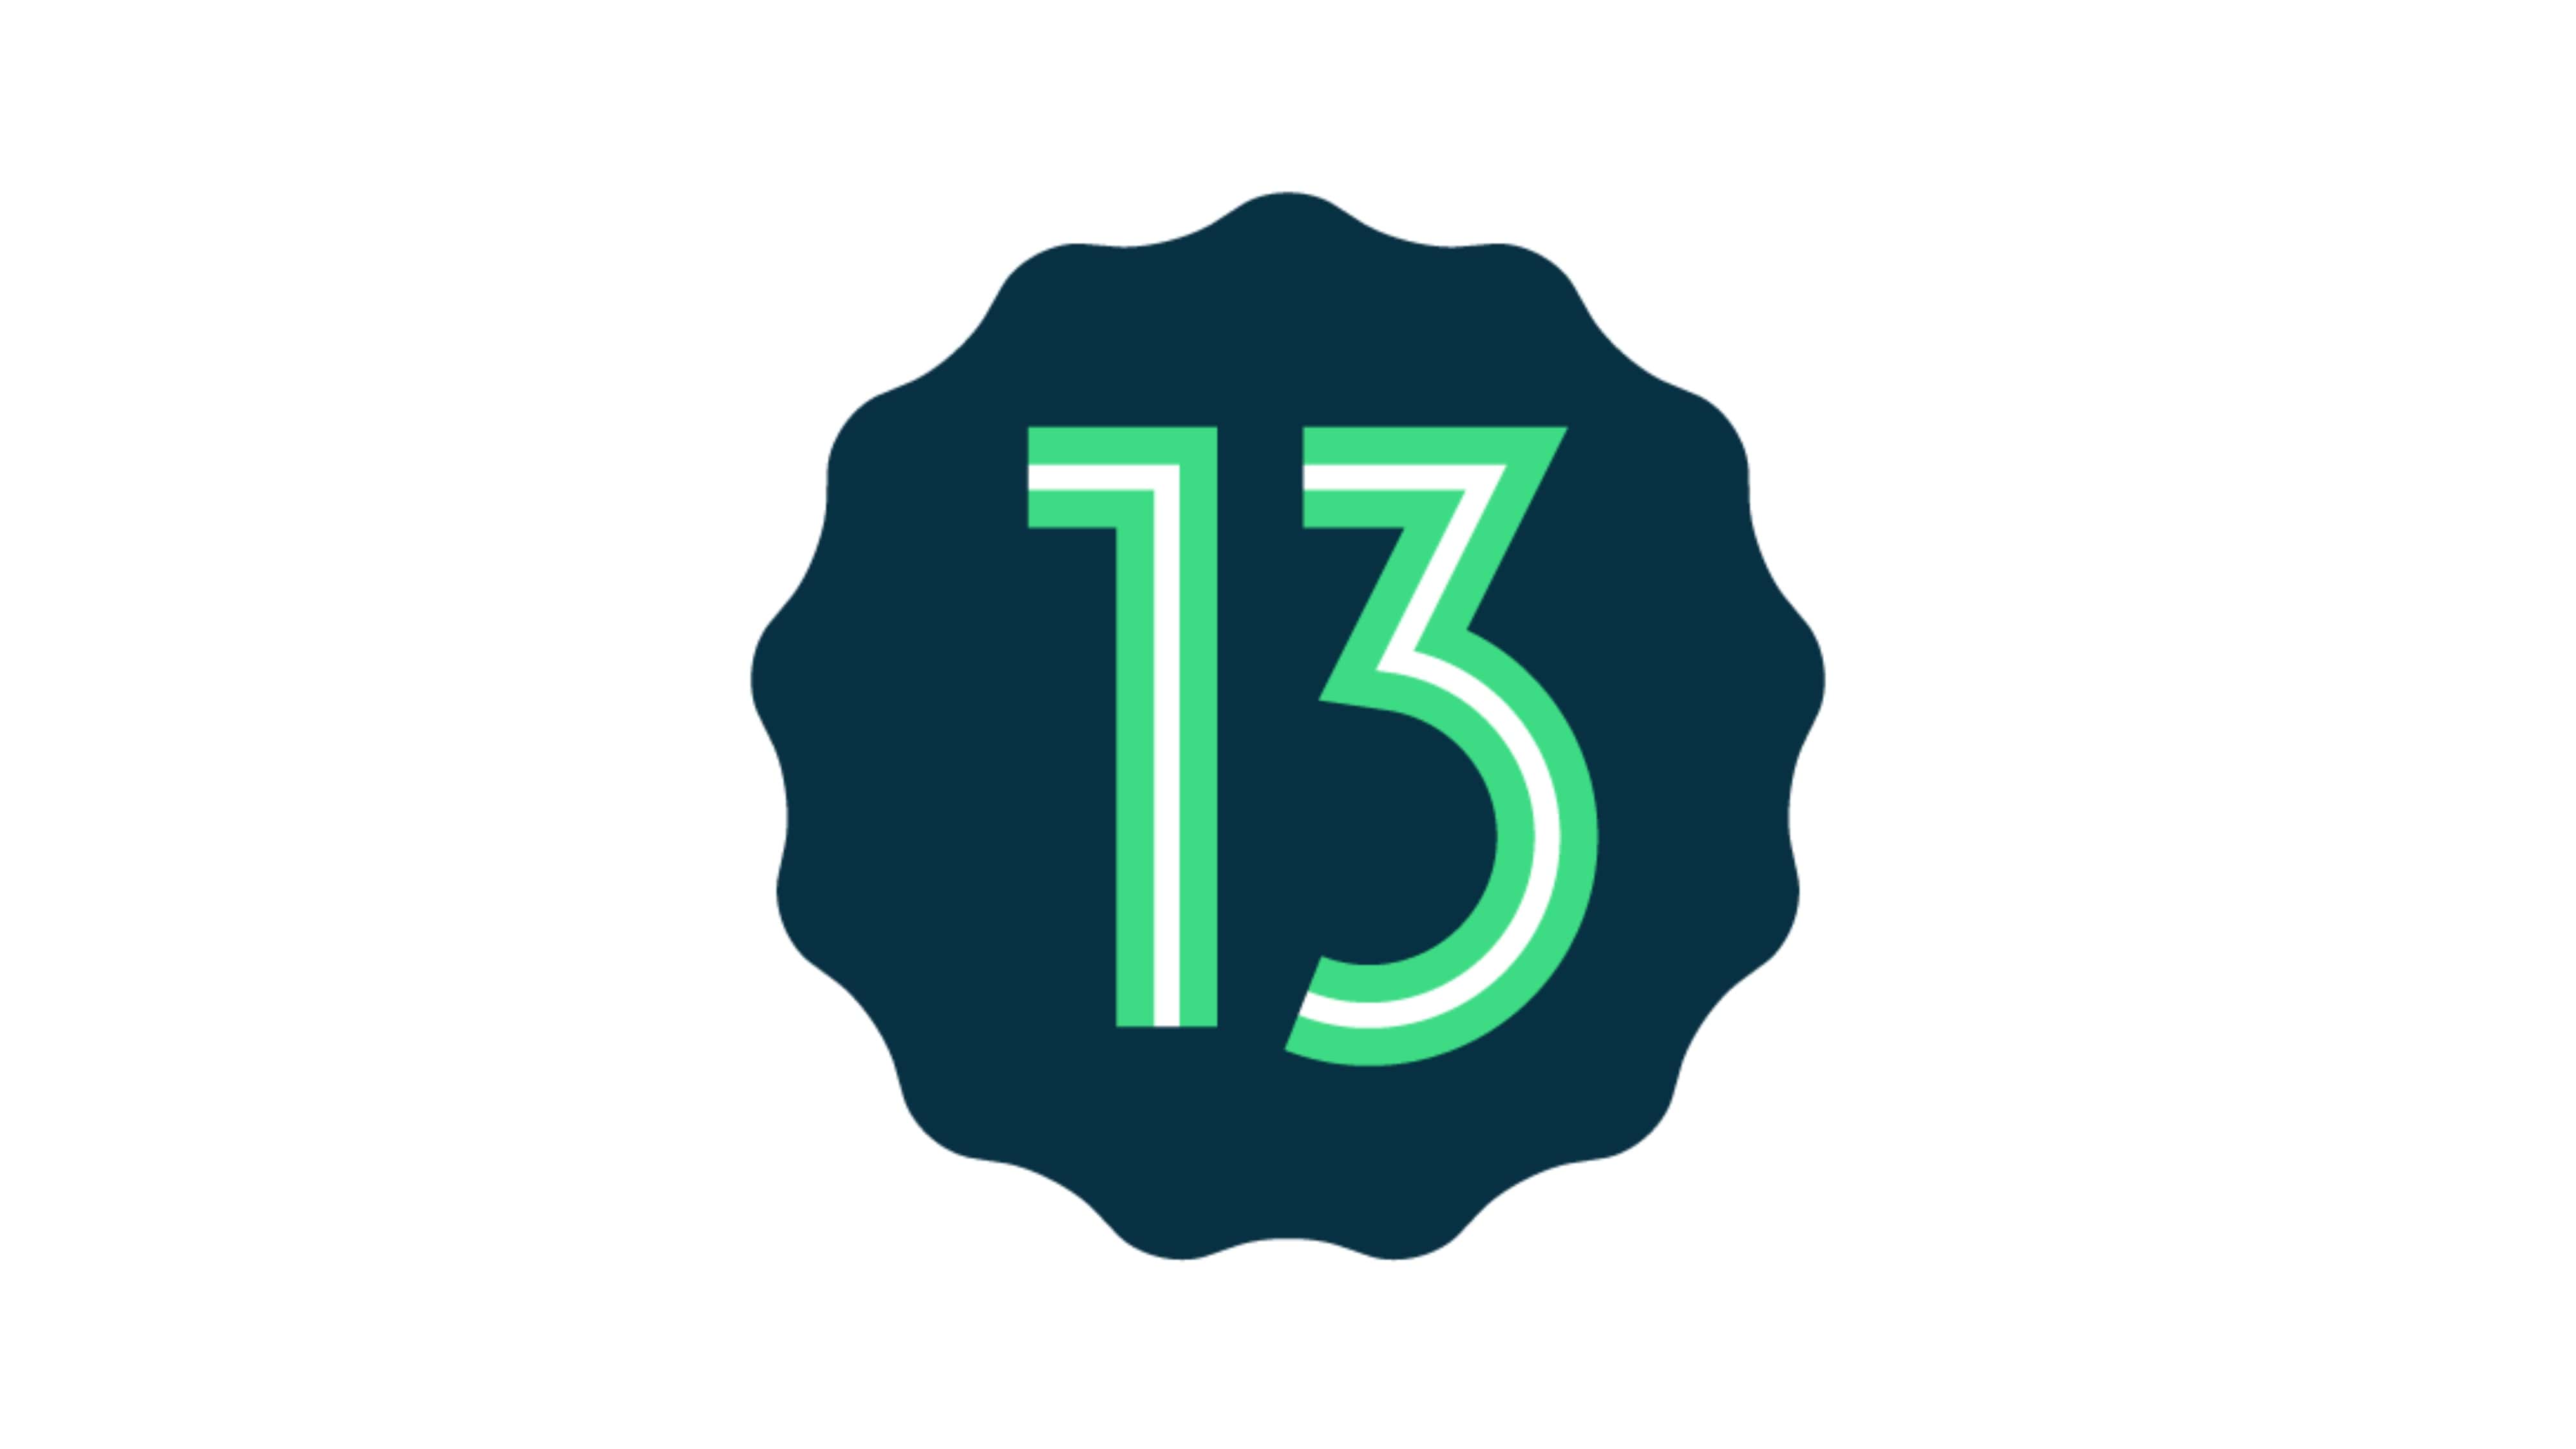 Андроид 13 последняя версия. Андроид 13. Android 13 logo. Андроид 13 логотип. 13 Логотип.